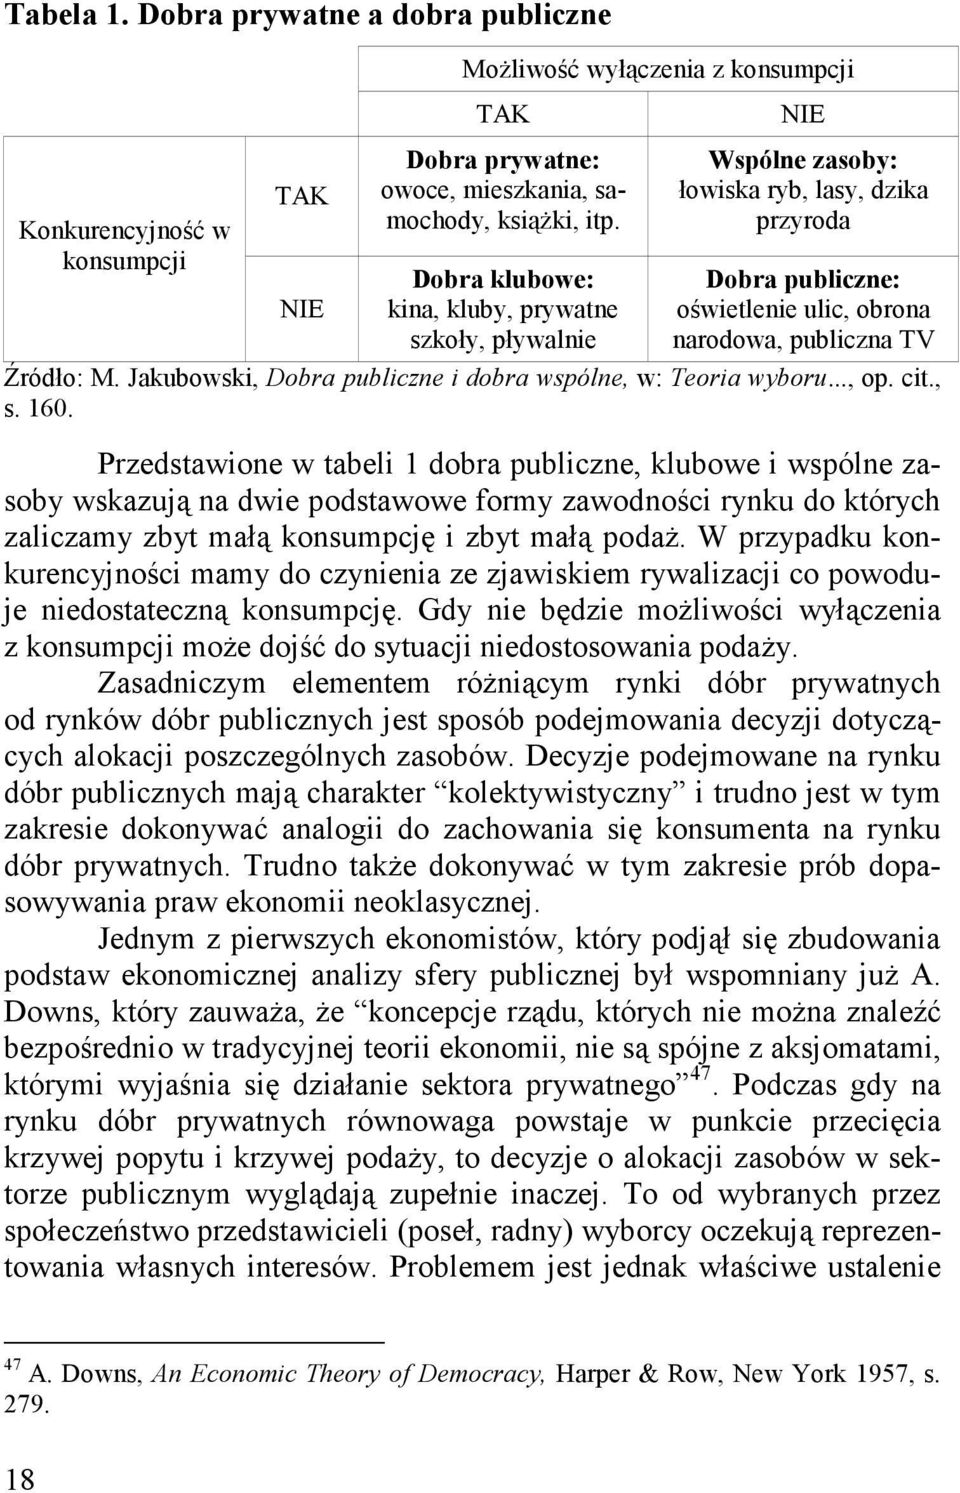 Jakubowski, Dobra publiczne i dobra wspólne, w: Teoria wyboru..., op. cit., s. 160.